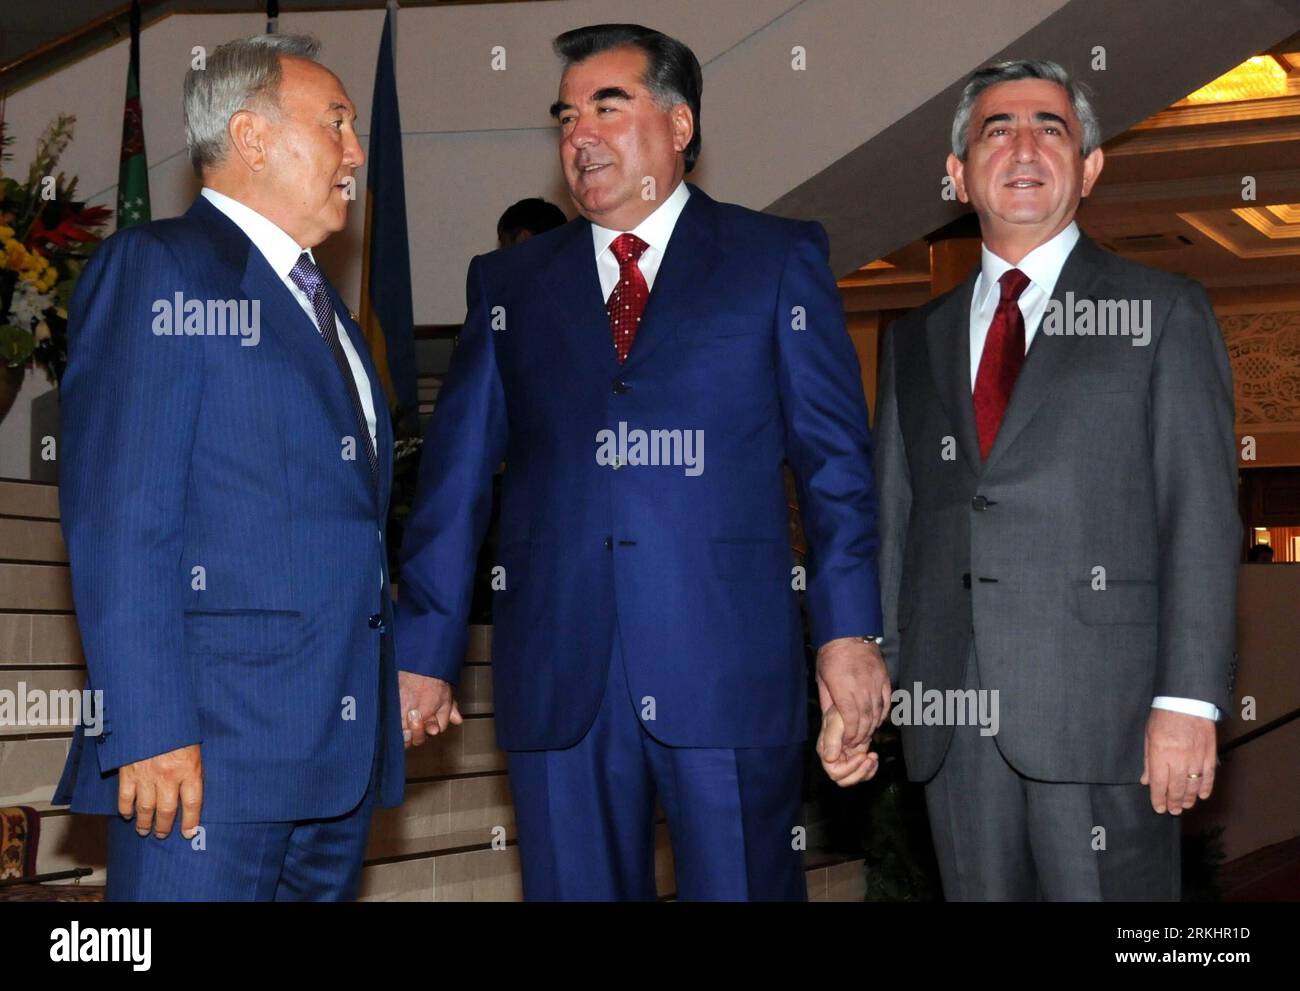 Bildnummer: 55890888 Datum: 03.09.2011 Copyright: imago/Xinhua (110903) -- DUSHANBE, 3 settembre 2011 (Xinhua) -- il presidente tagiko Imomali Rakhmon (C) sta con il presidente armeno Serzh Sargsyan (R) e il presidente kazako Nursultan Nazarbayev nella capitale tagika Dushanbe il 3 settembre 2011. I leader della Comunità degli Stati indipendenti (CSI) hanno iniziato i loro colloqui al vertice sabato nella capitale tagika di Dushanbe, in occasione del ventesimo anniversario del gruppo. Si prevede che i partecipanti esaminino la CSI negli ultimi 20 anni e disegnino un progetto per il suo sviluppo futuro. (Xinhua/Sadat) (nxl) TAGIKISTAN-D. Foto Stock